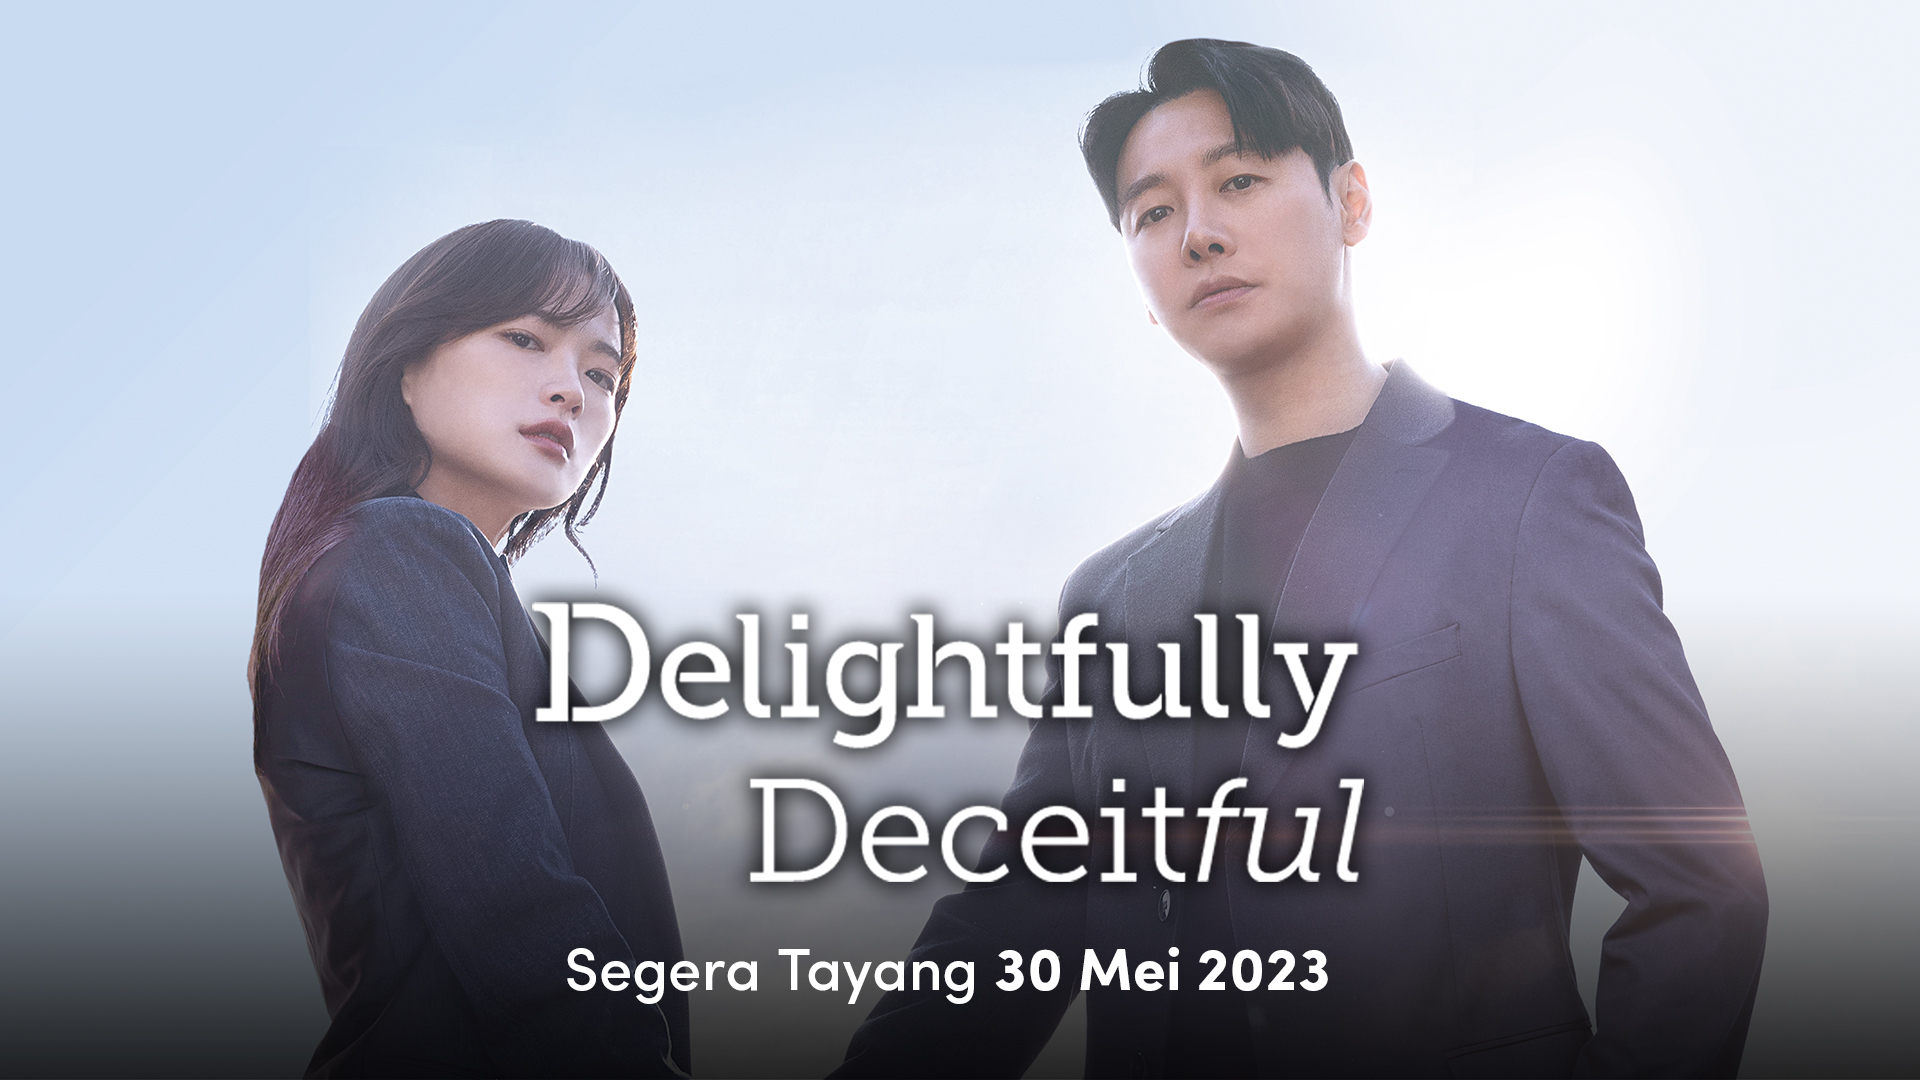 Drama Korea "Delightfully Deceitful", Kisah Penipu dan Pengacara Vidio